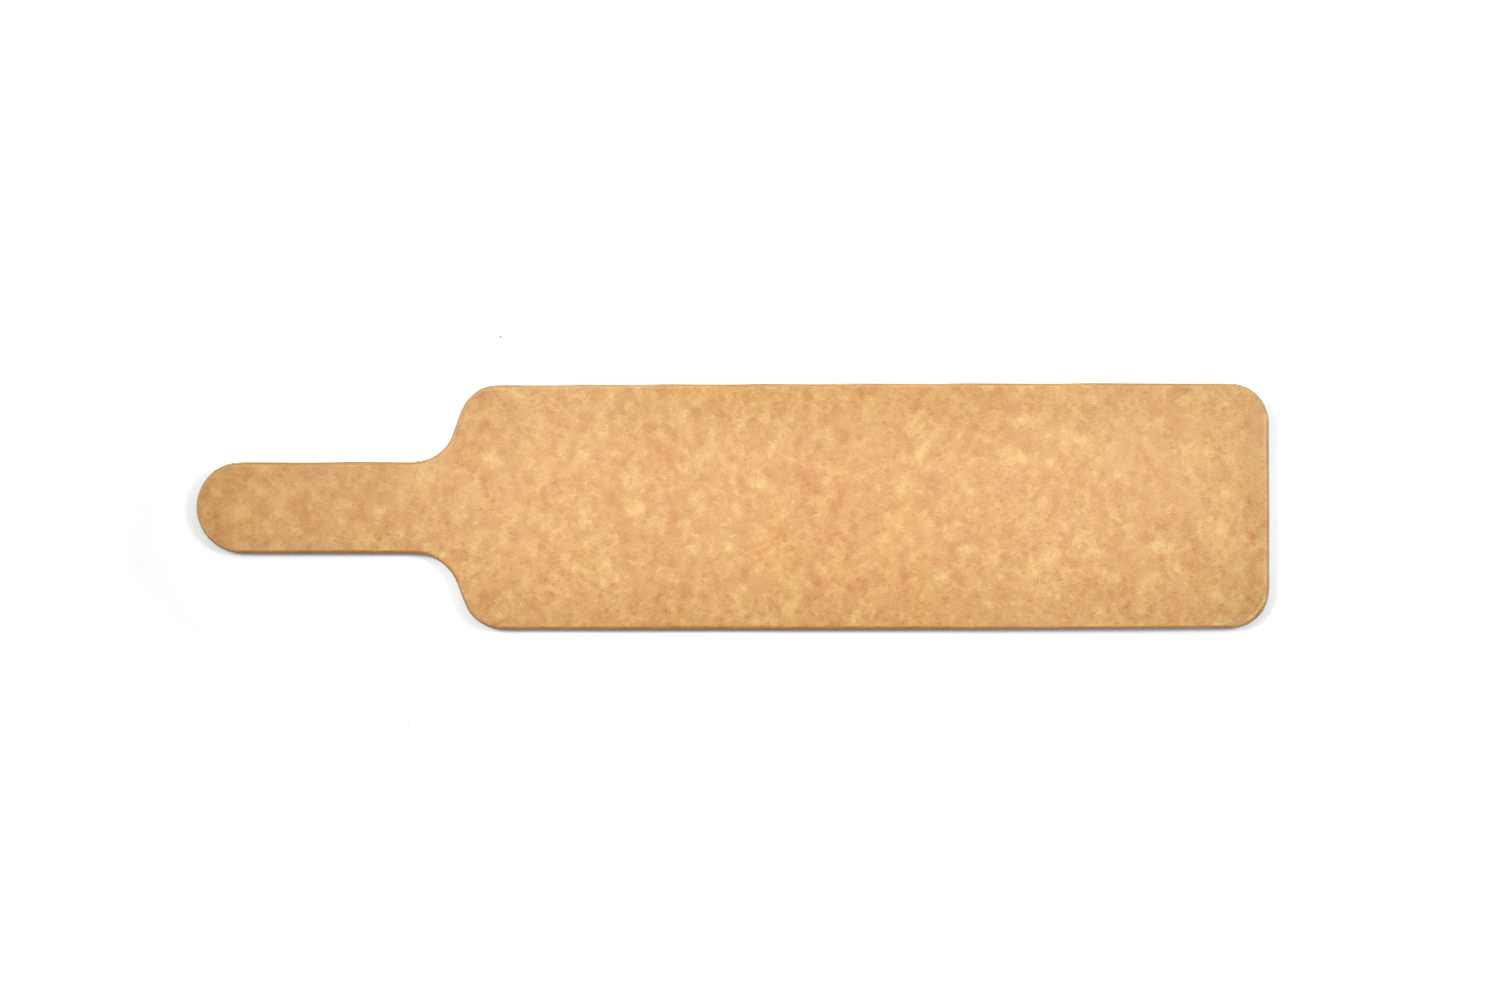 Baguette wood fiber cutting board (Dishwasher safe)